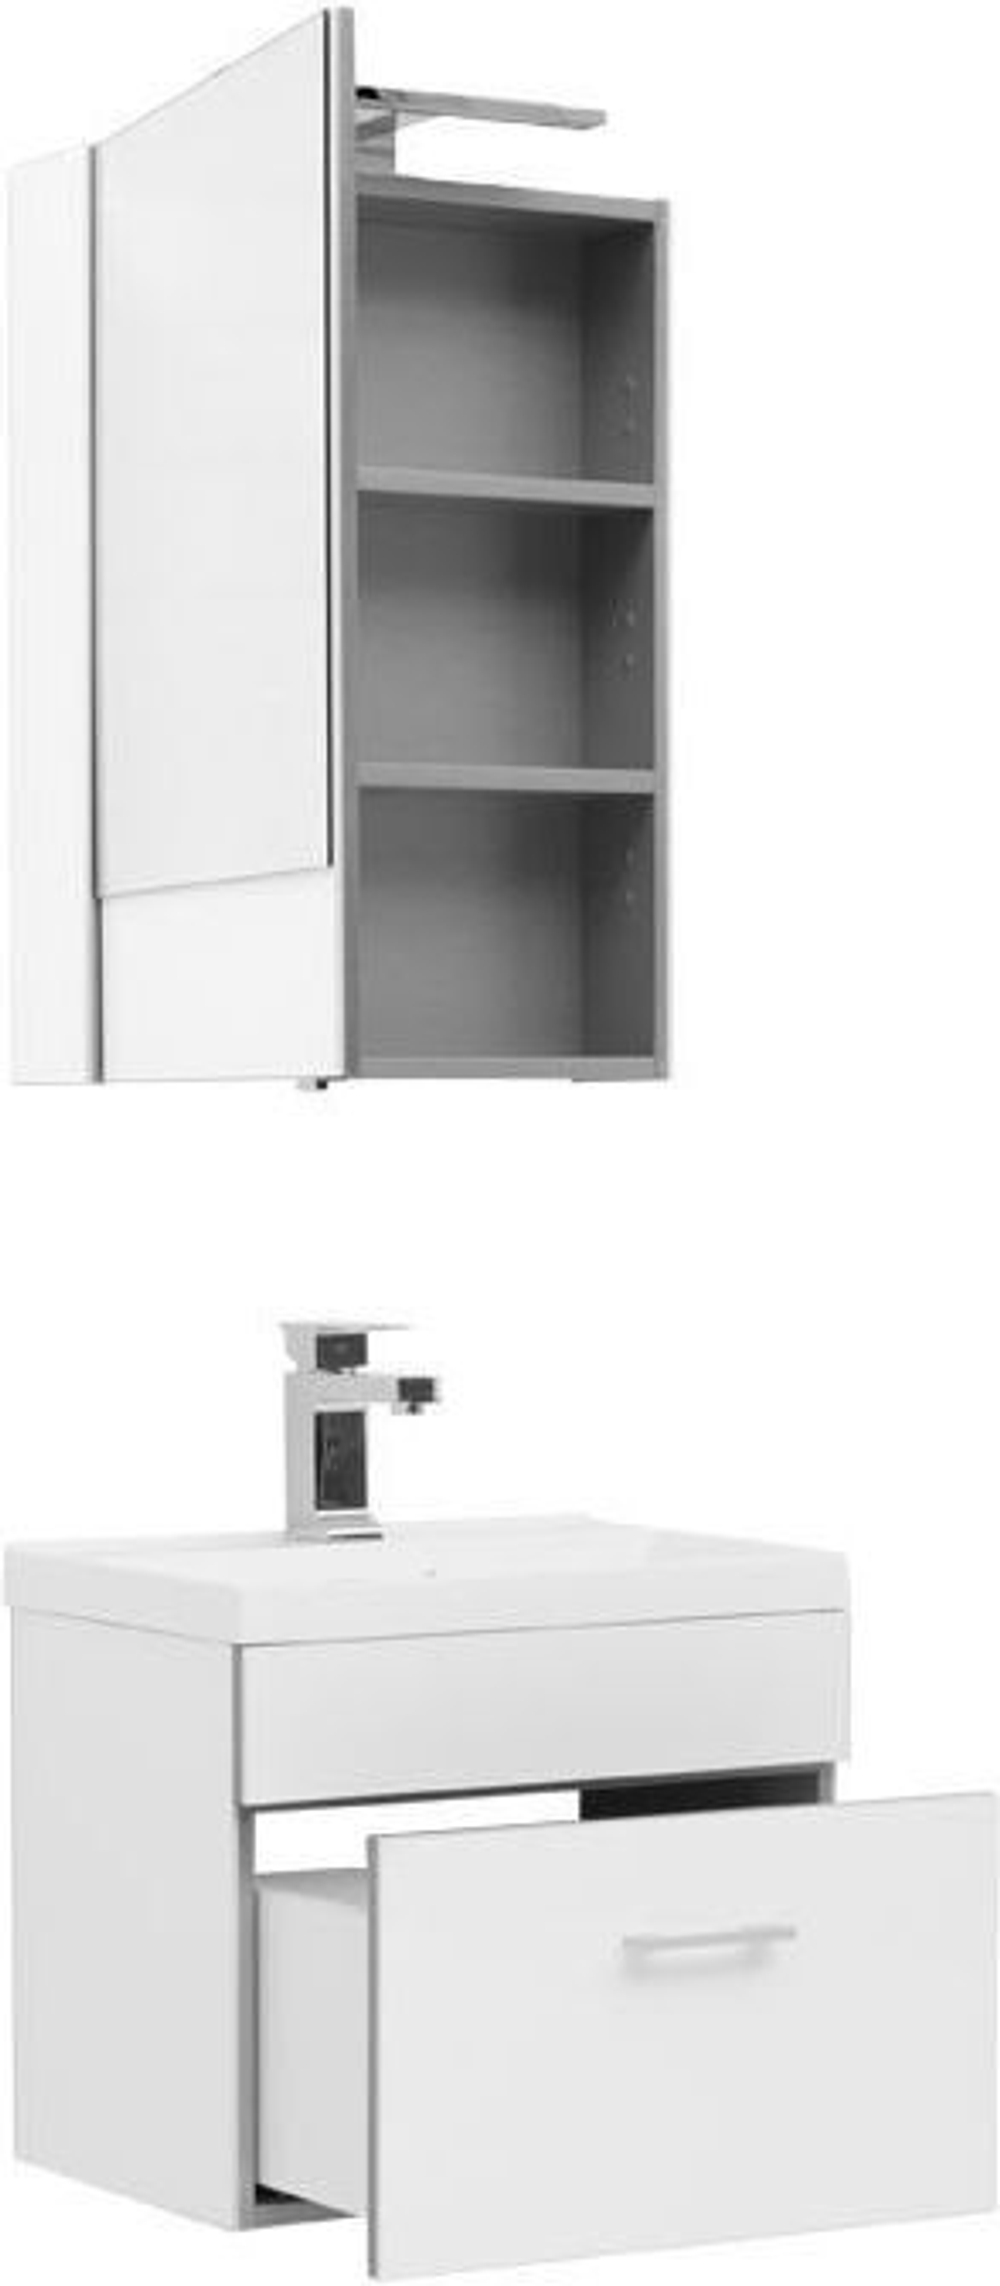 Мебель для ванной Aquanet Верона 50 белый (подвесной 1 ящик)